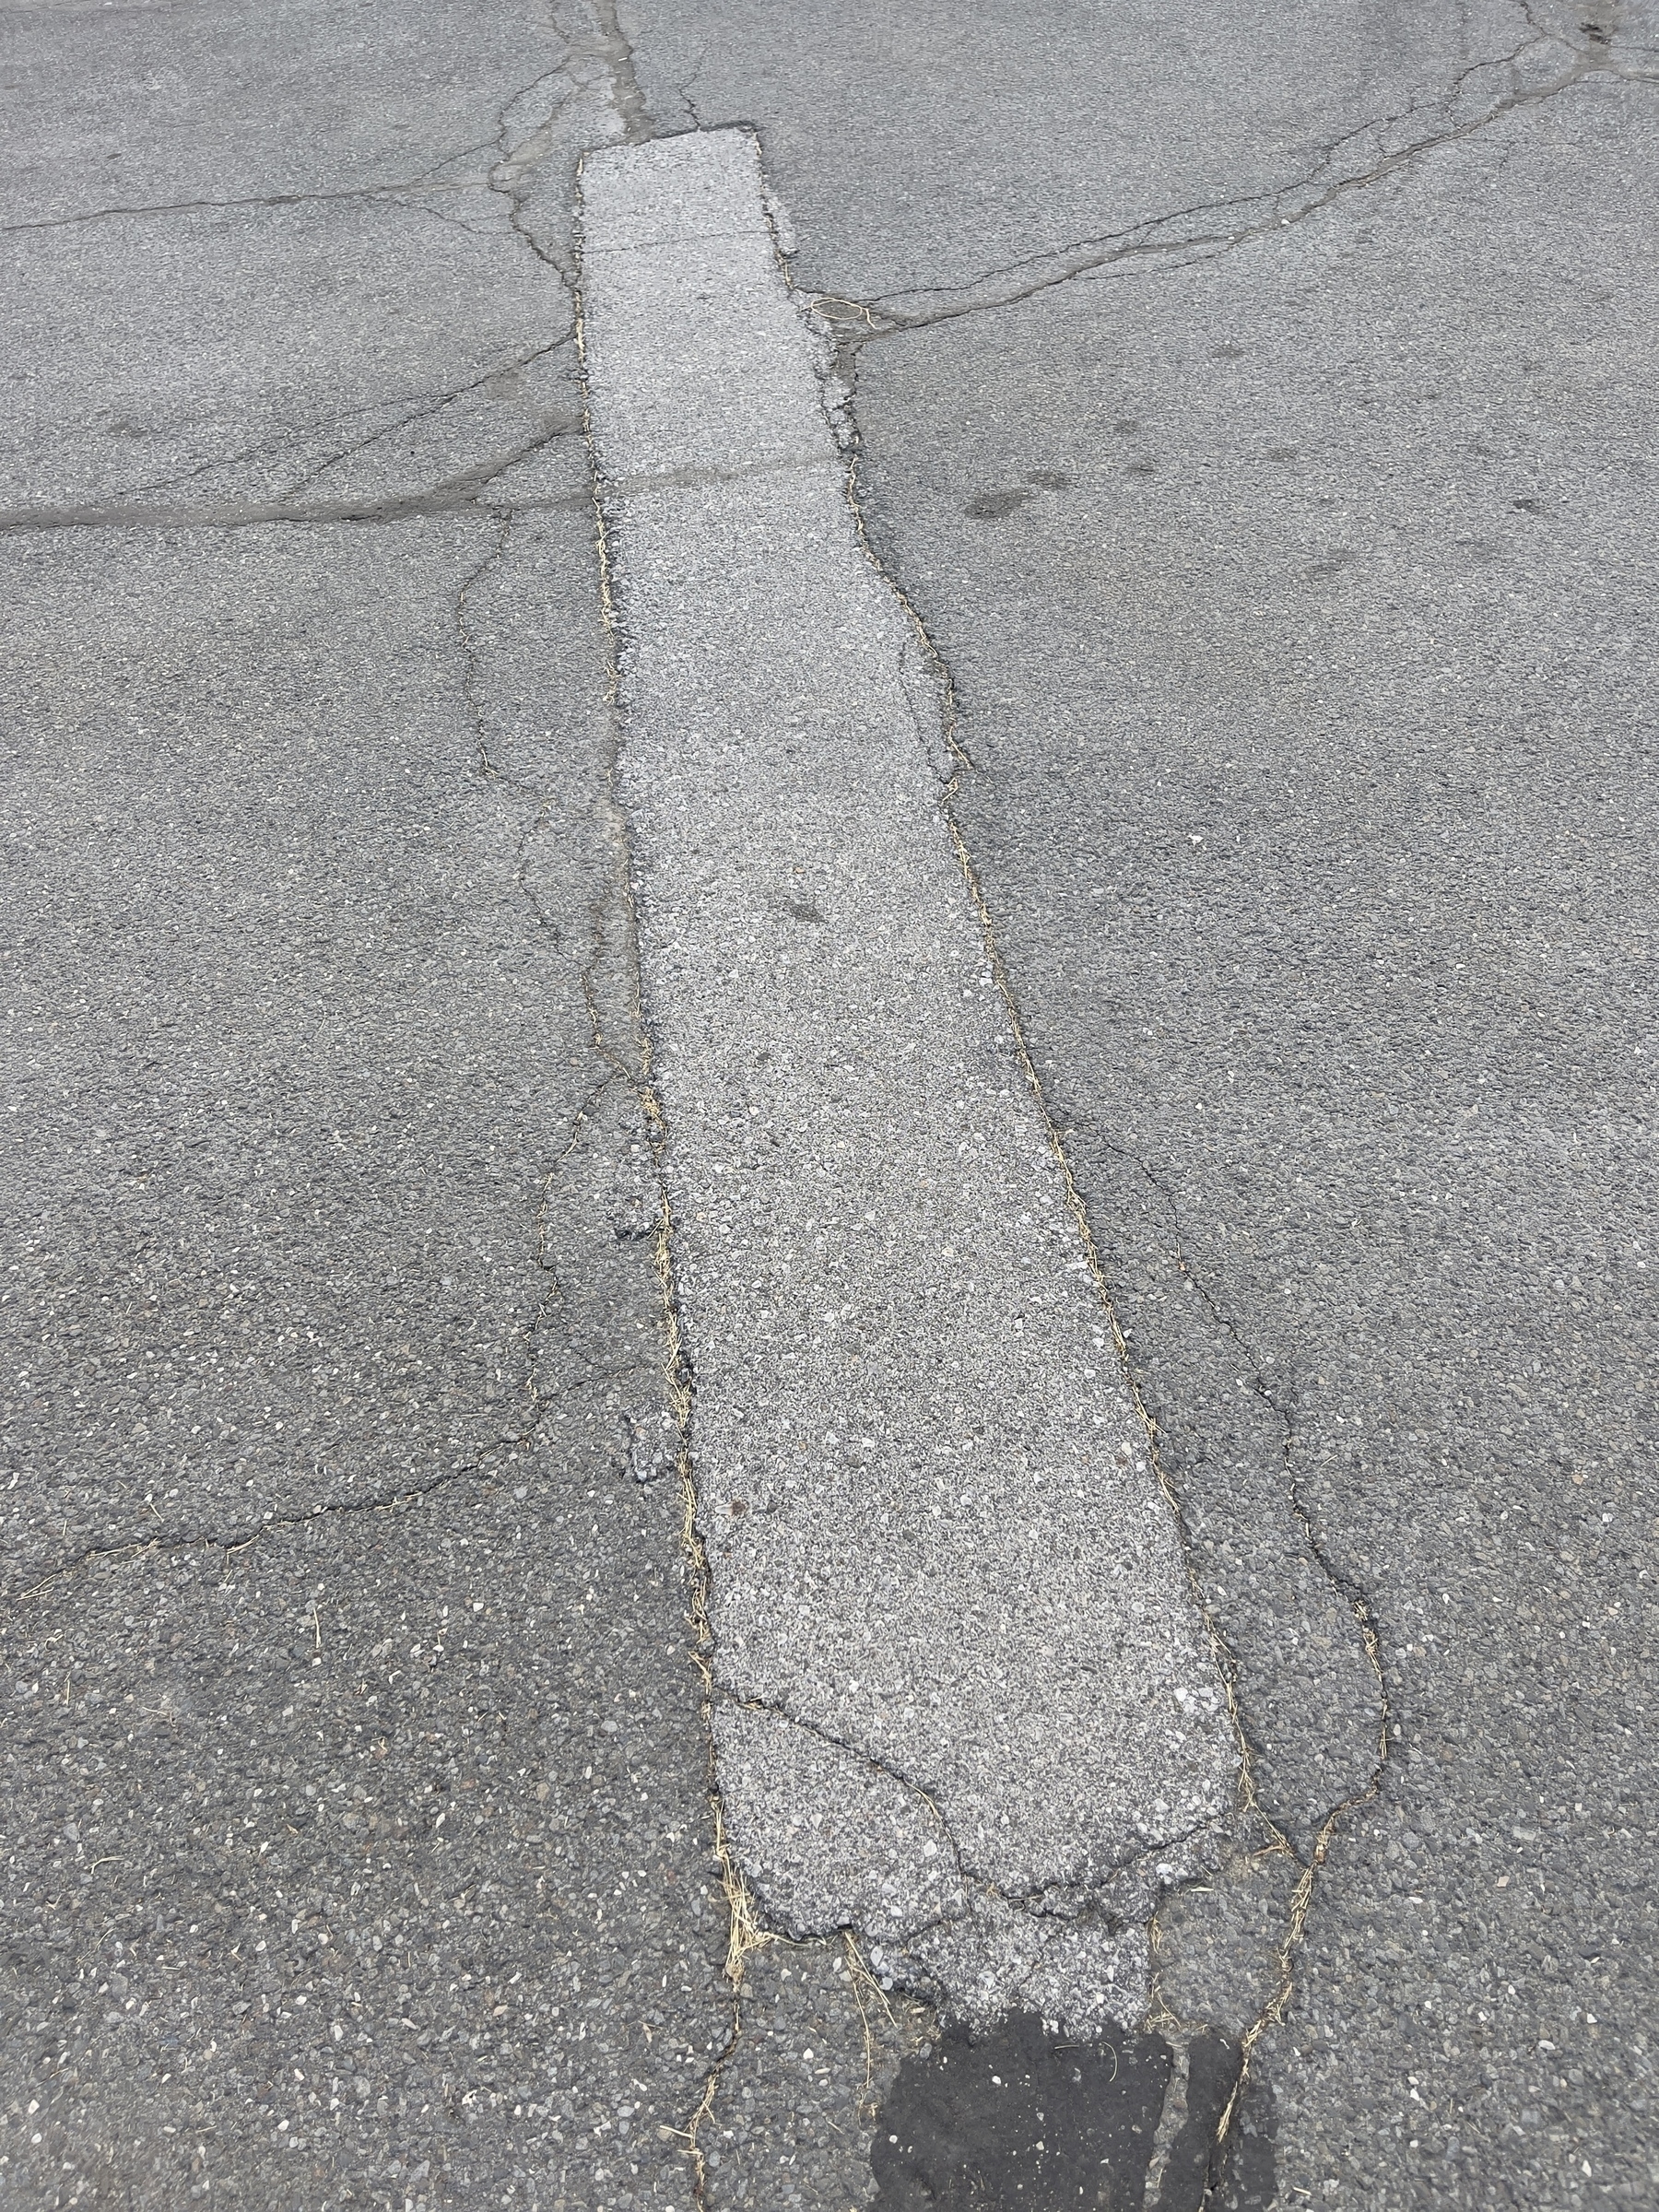 Elongated rectangular patch in an asphalt driveway. 